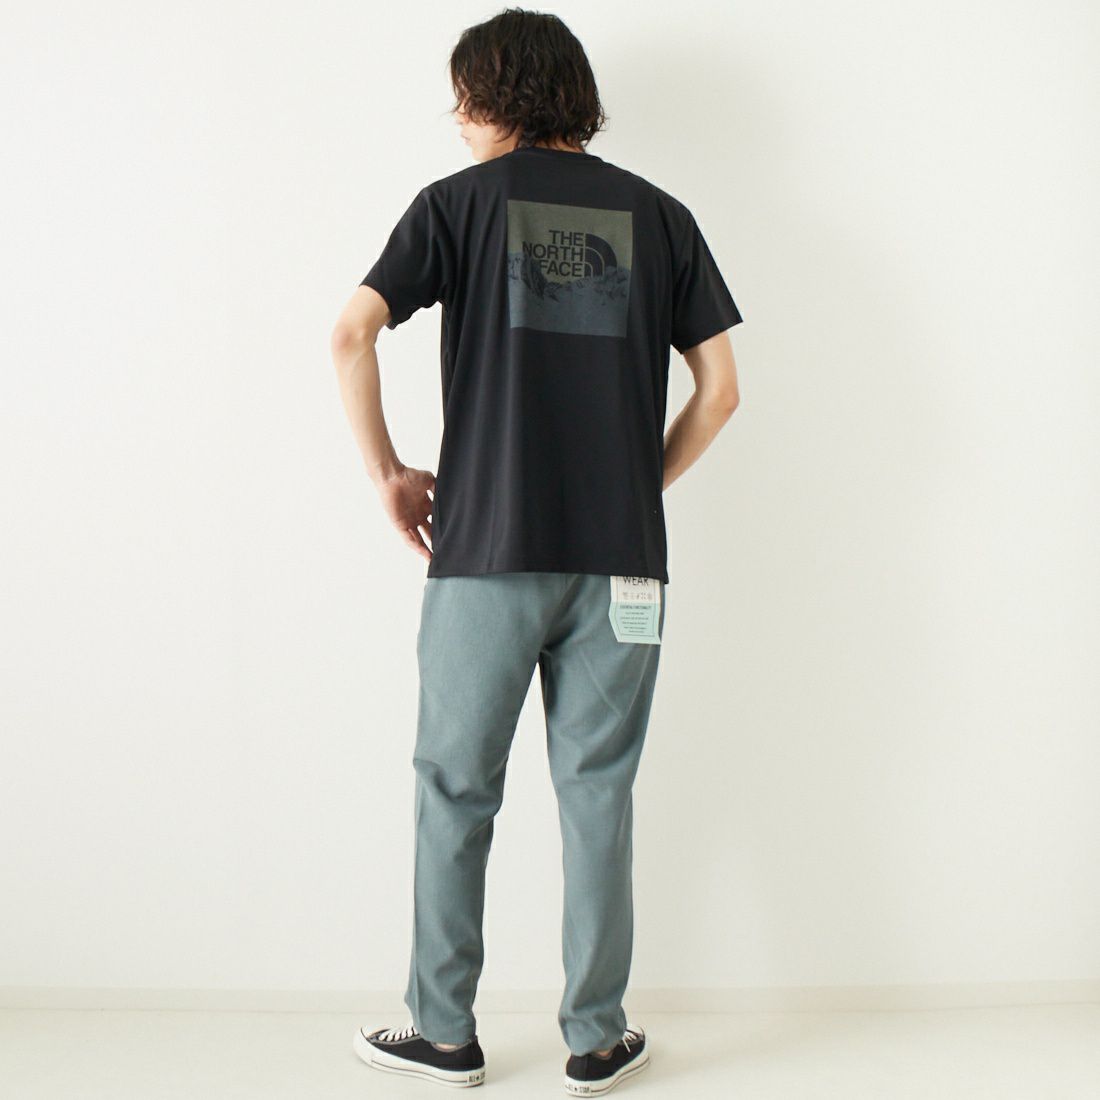 Jeans Factory Clothes [ジーンズファクトリークローズ] リランチェブッチャー1Pイージートラウザー [JFC-232-031] 05 BLUE &&モデル身長：182cm 着用サイズ：L&&